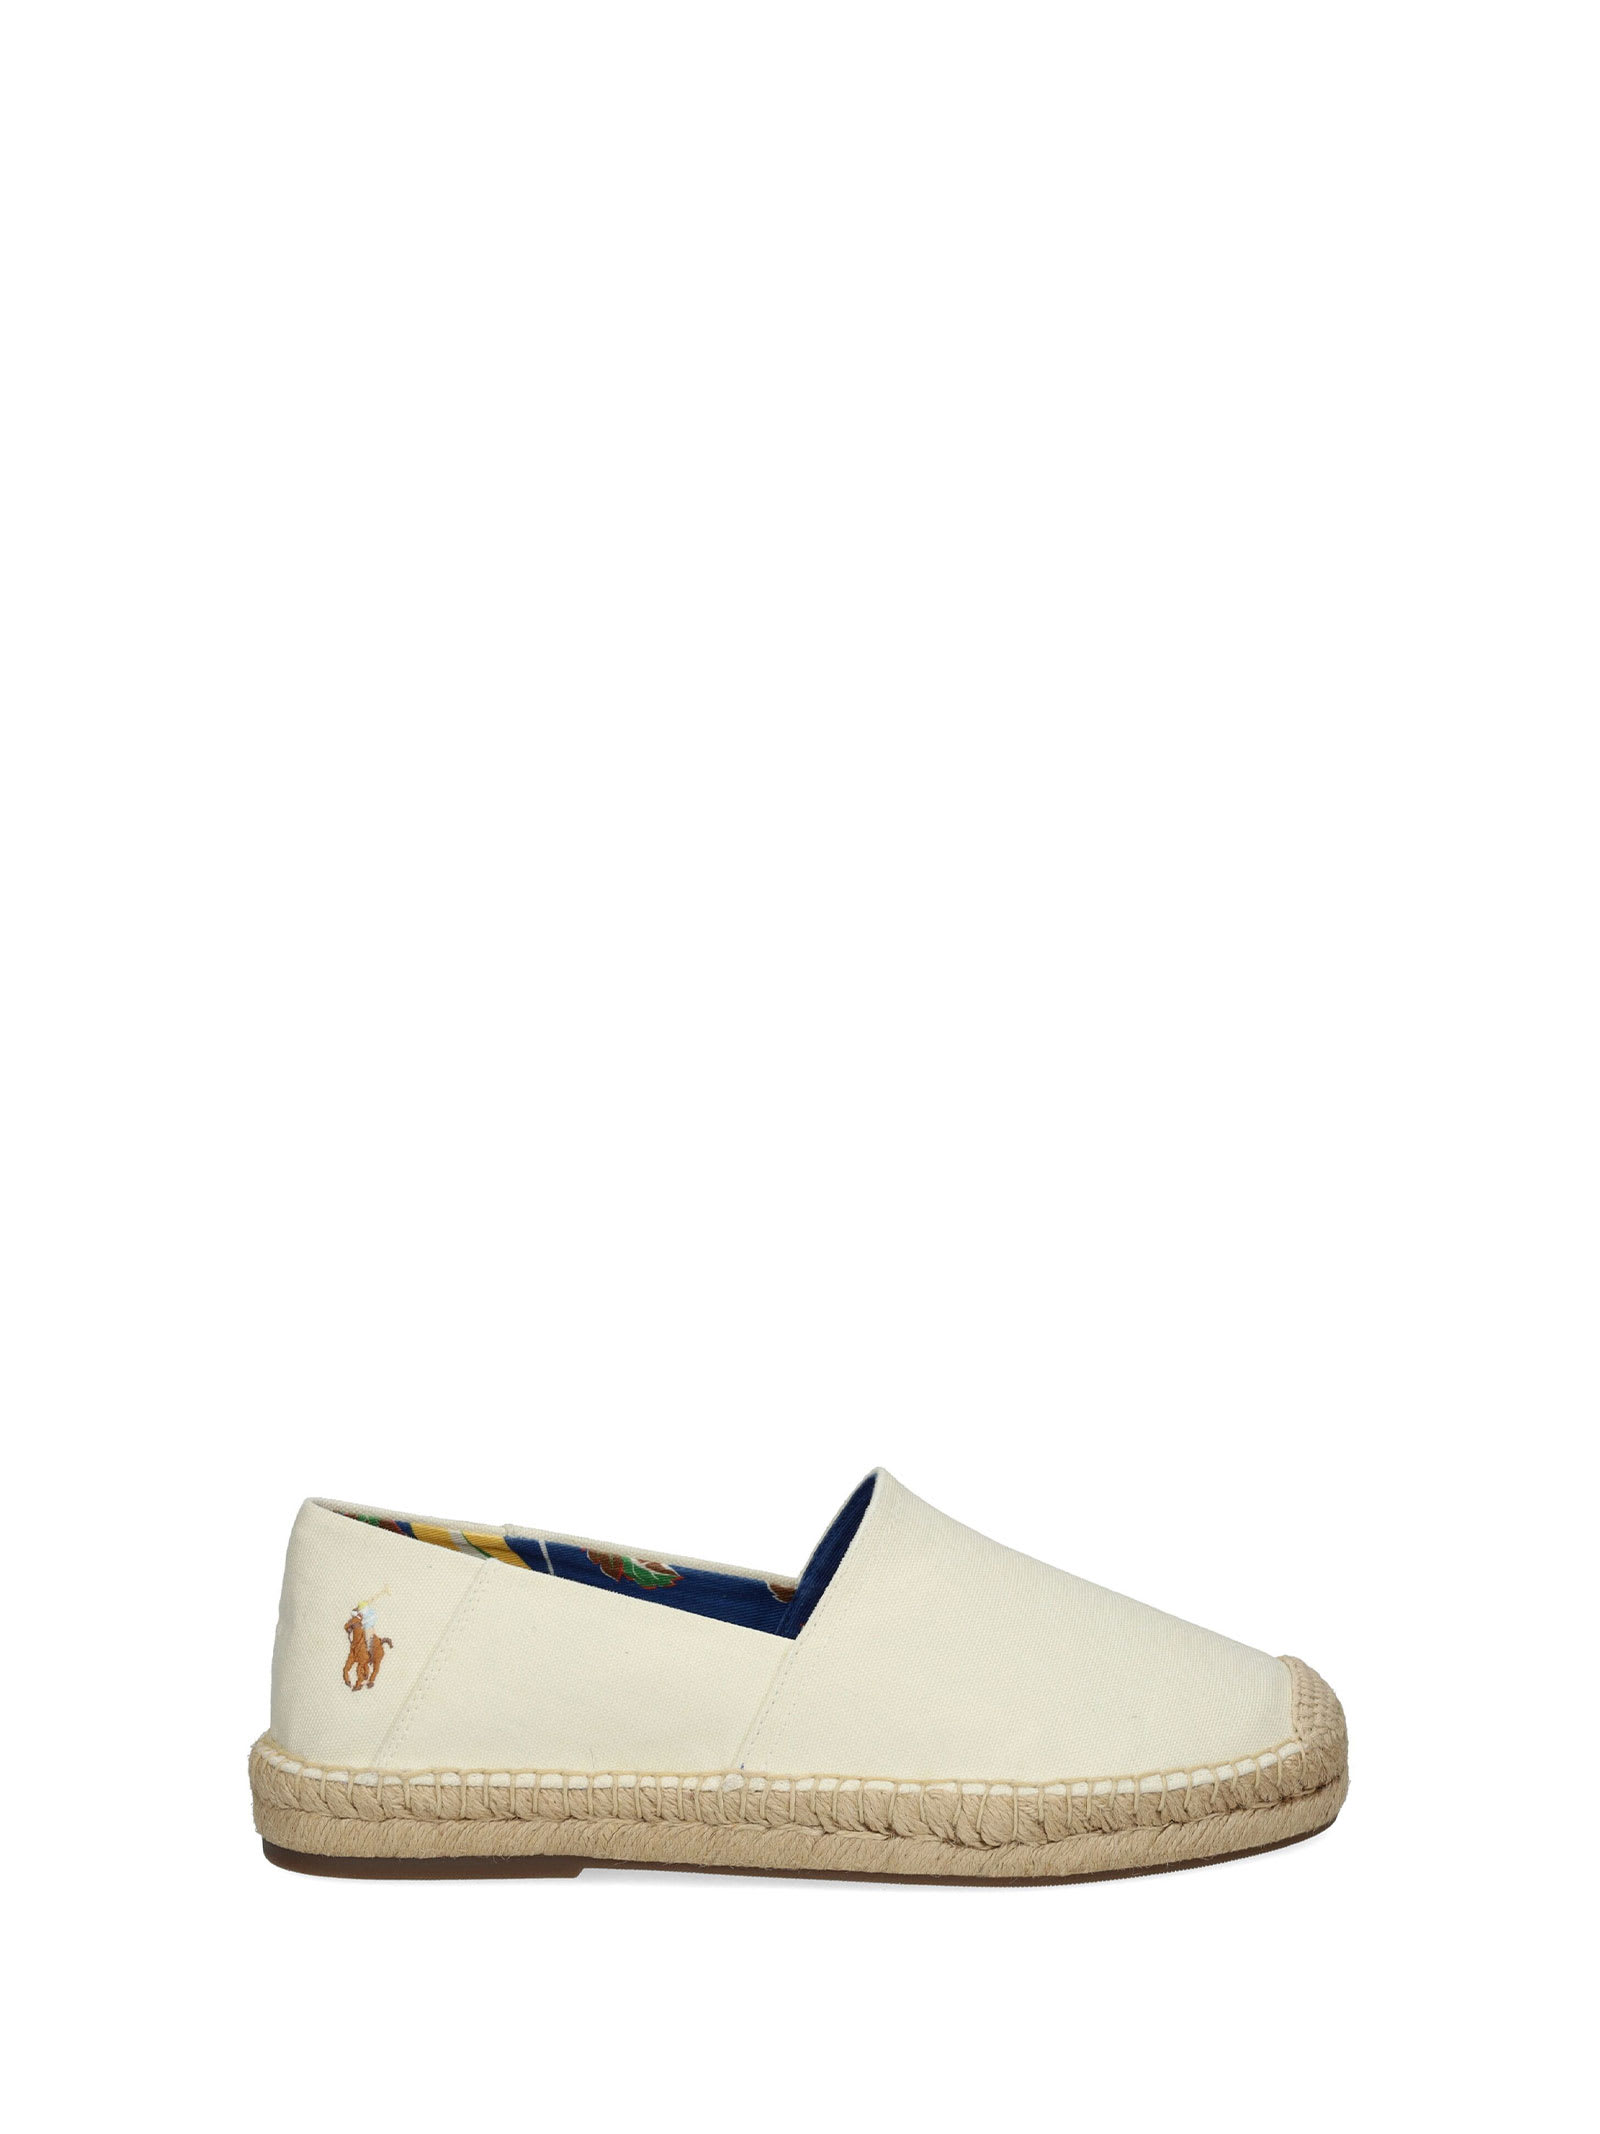 Ralph Lauren Loafers In Cream